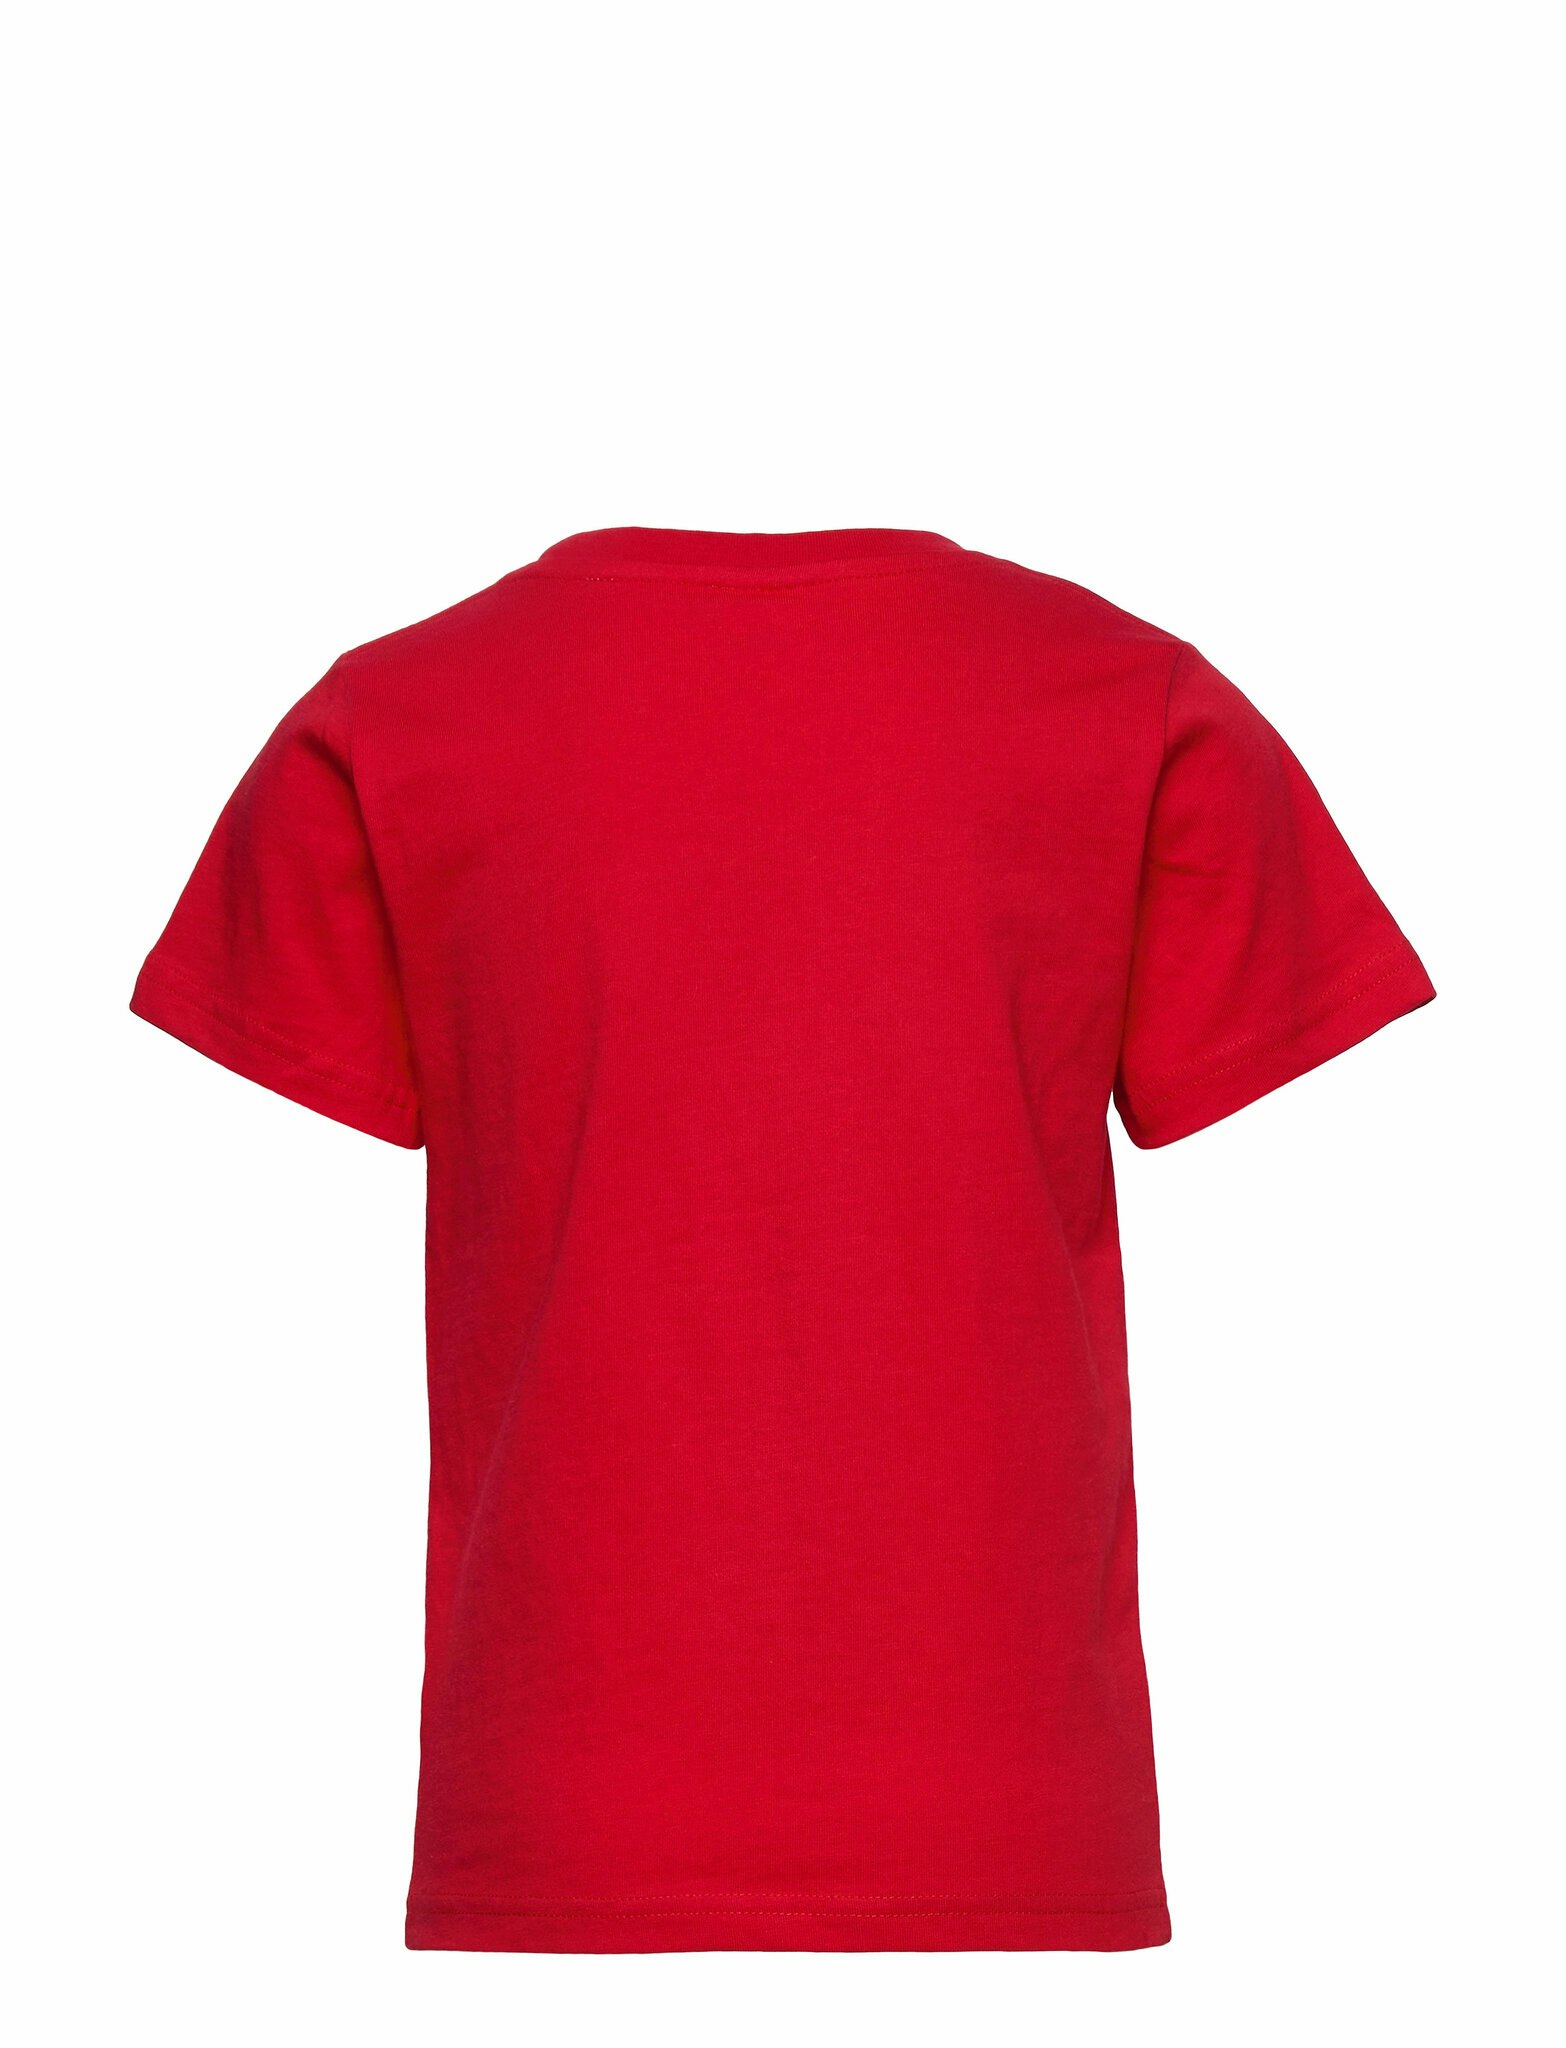 T-Shirt, Pippi Longstocking Red